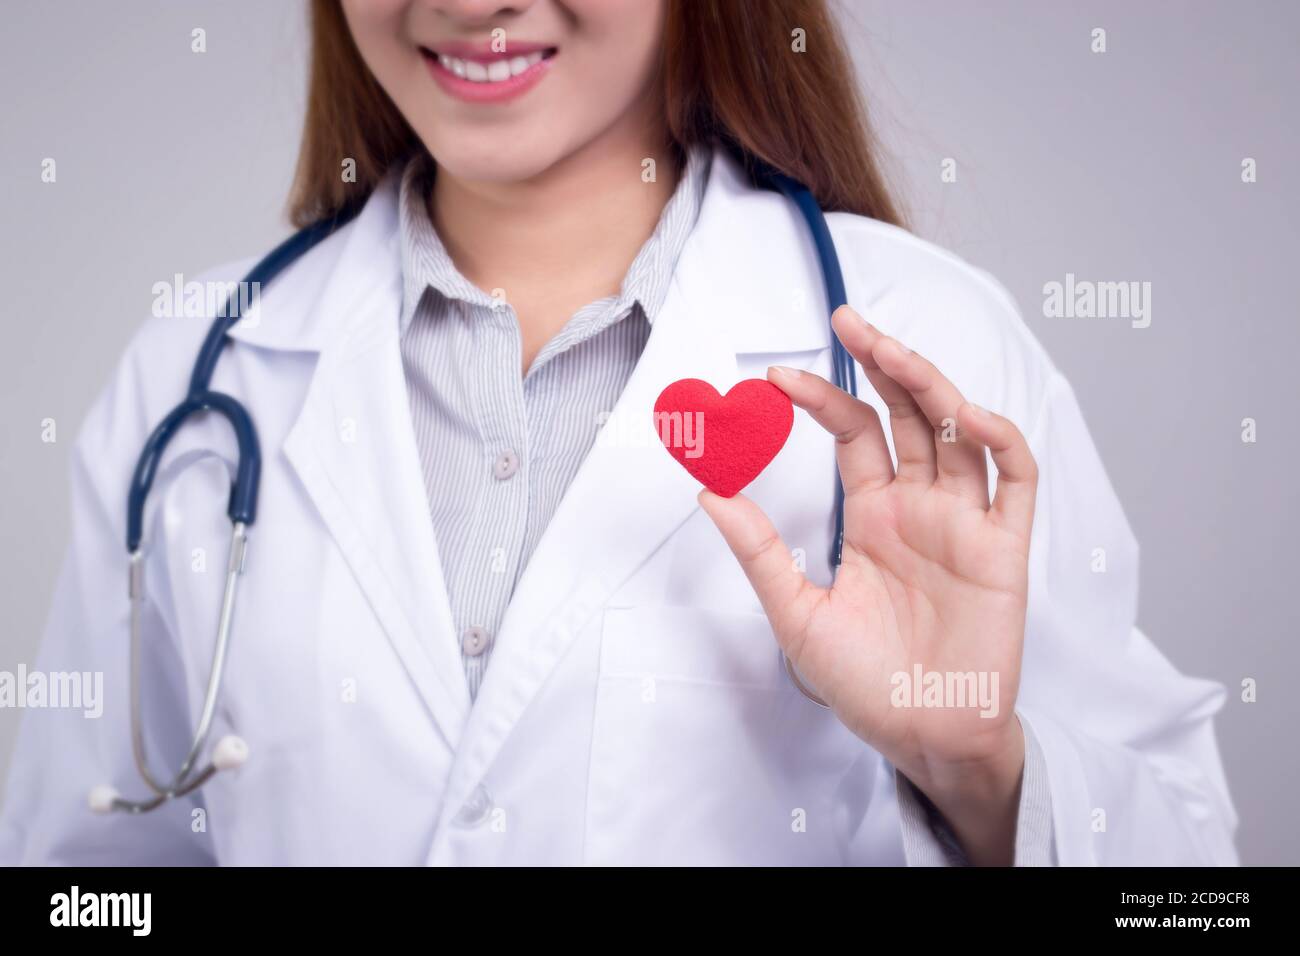 Concetto sano : giovane medico asiatico con cuore rosso in mano, volto anonimo Foto Stock